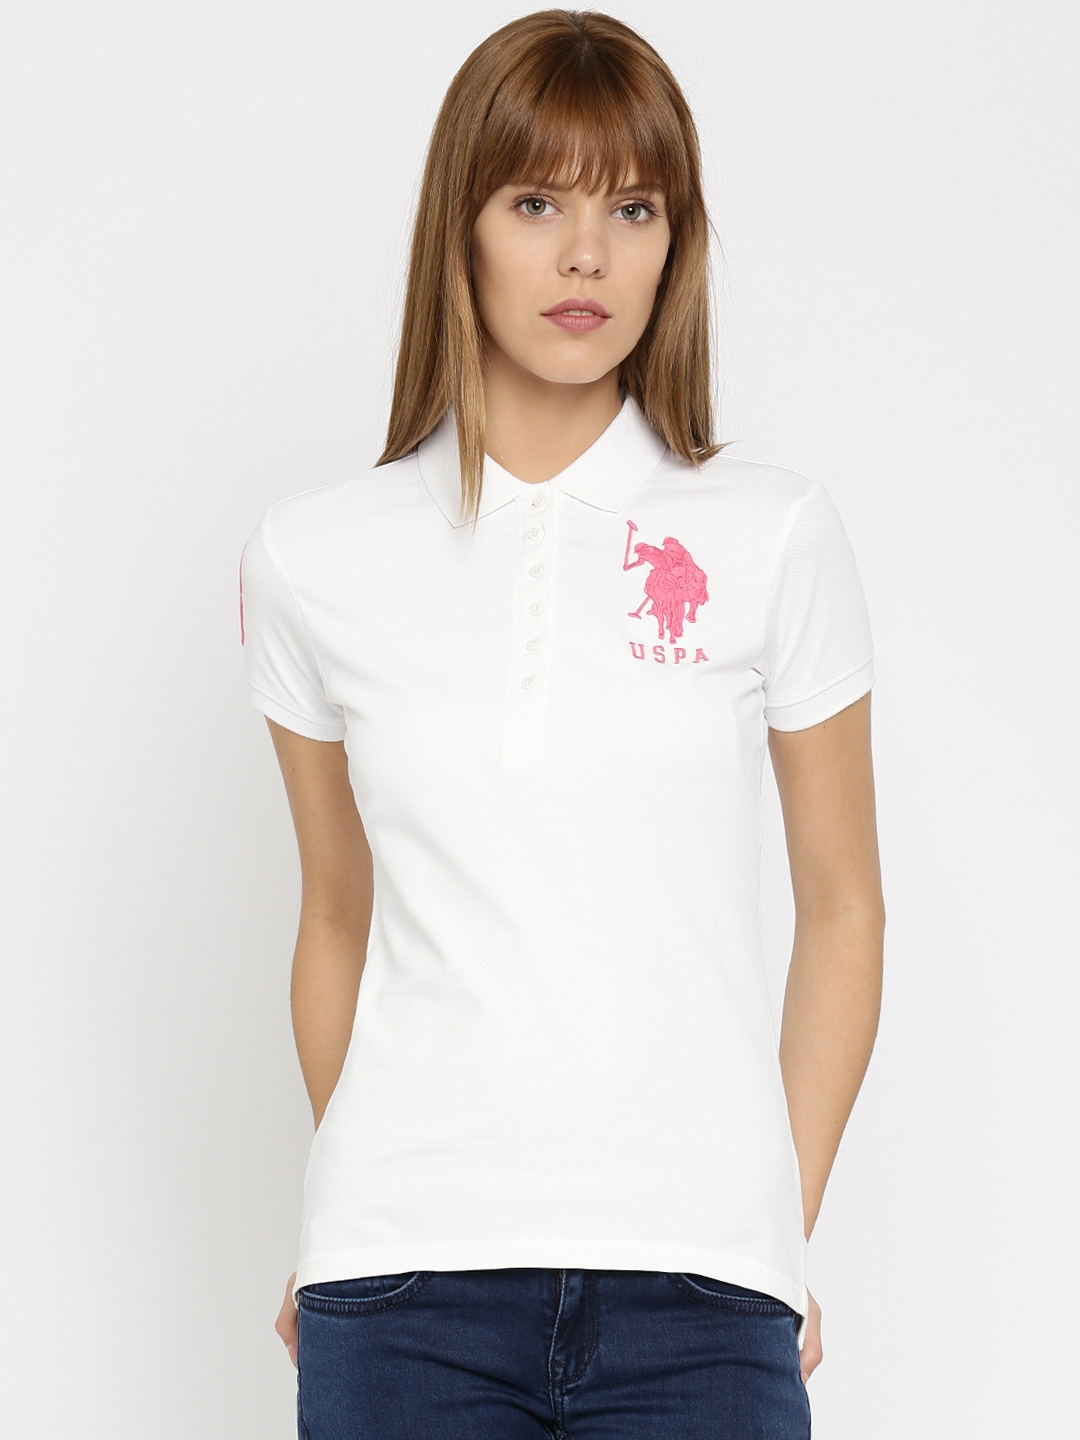 Buy U S Polo  Assn Women  White Solid Polo  T  Shirt  